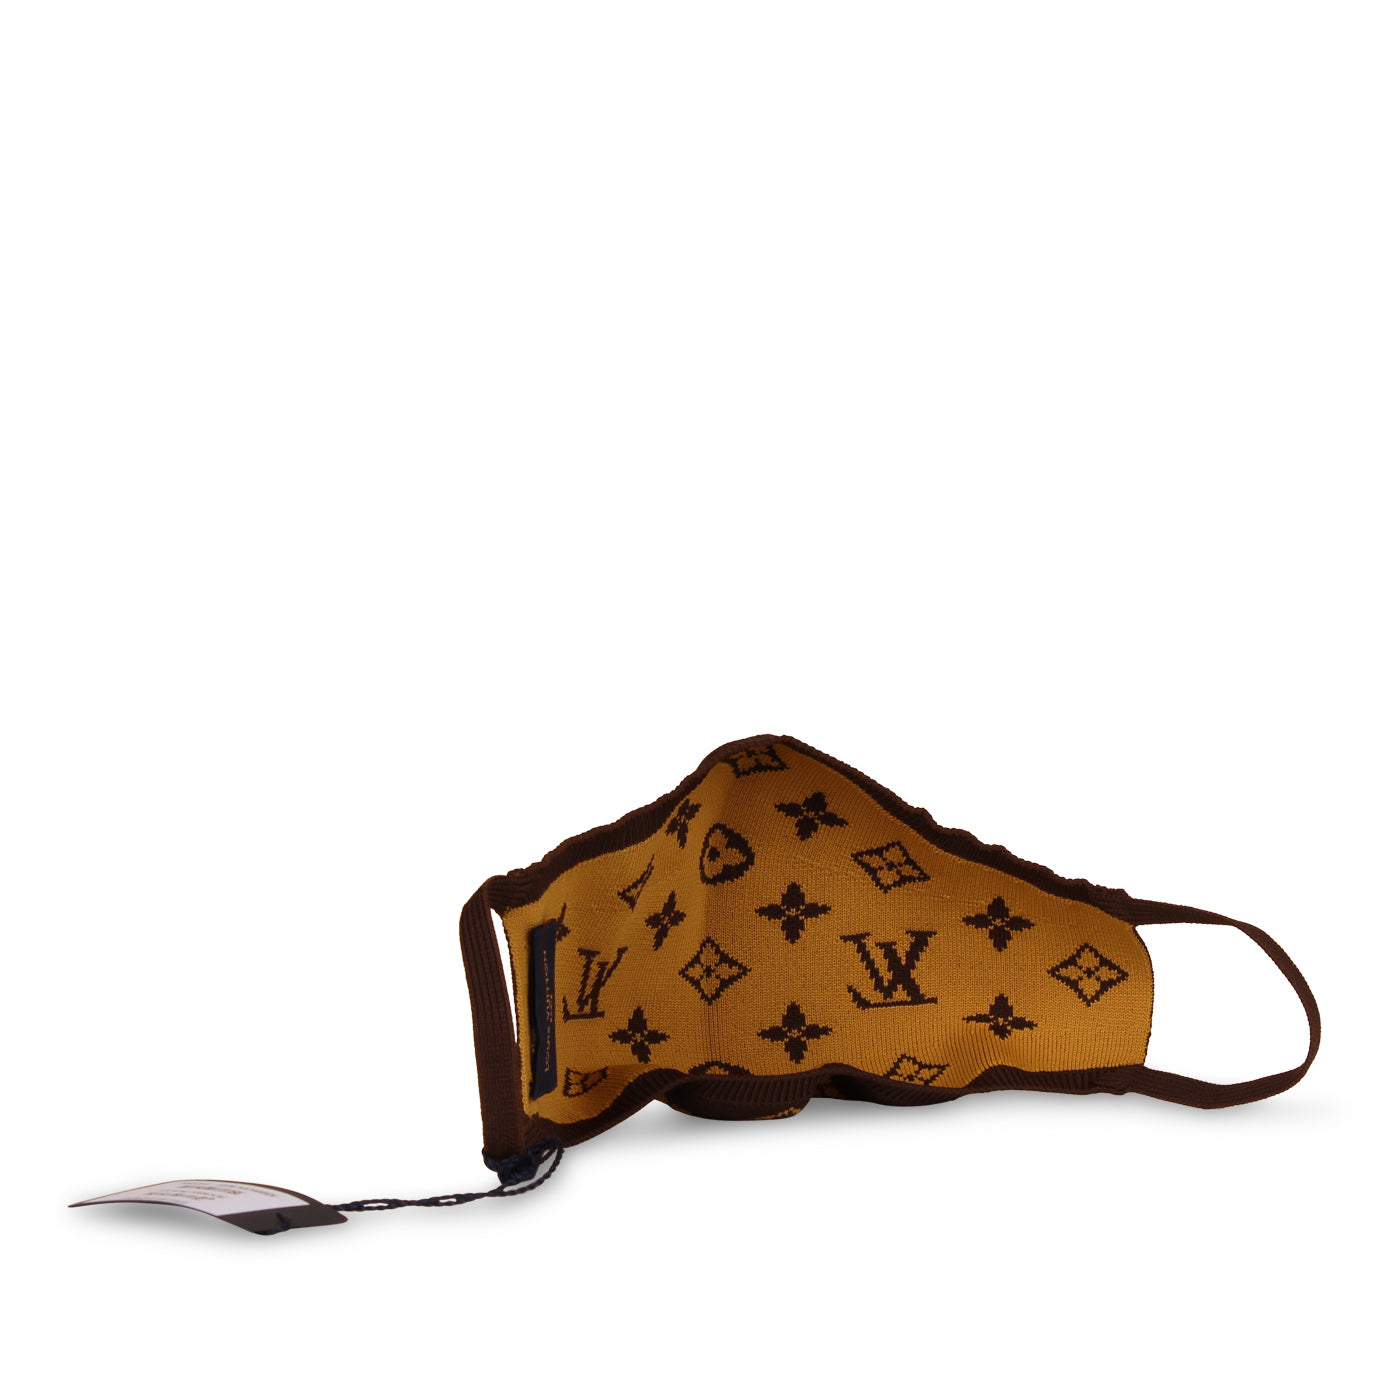 Louis Vuitton Monogram Knit Face Mask 94lz526s – Bagriculture